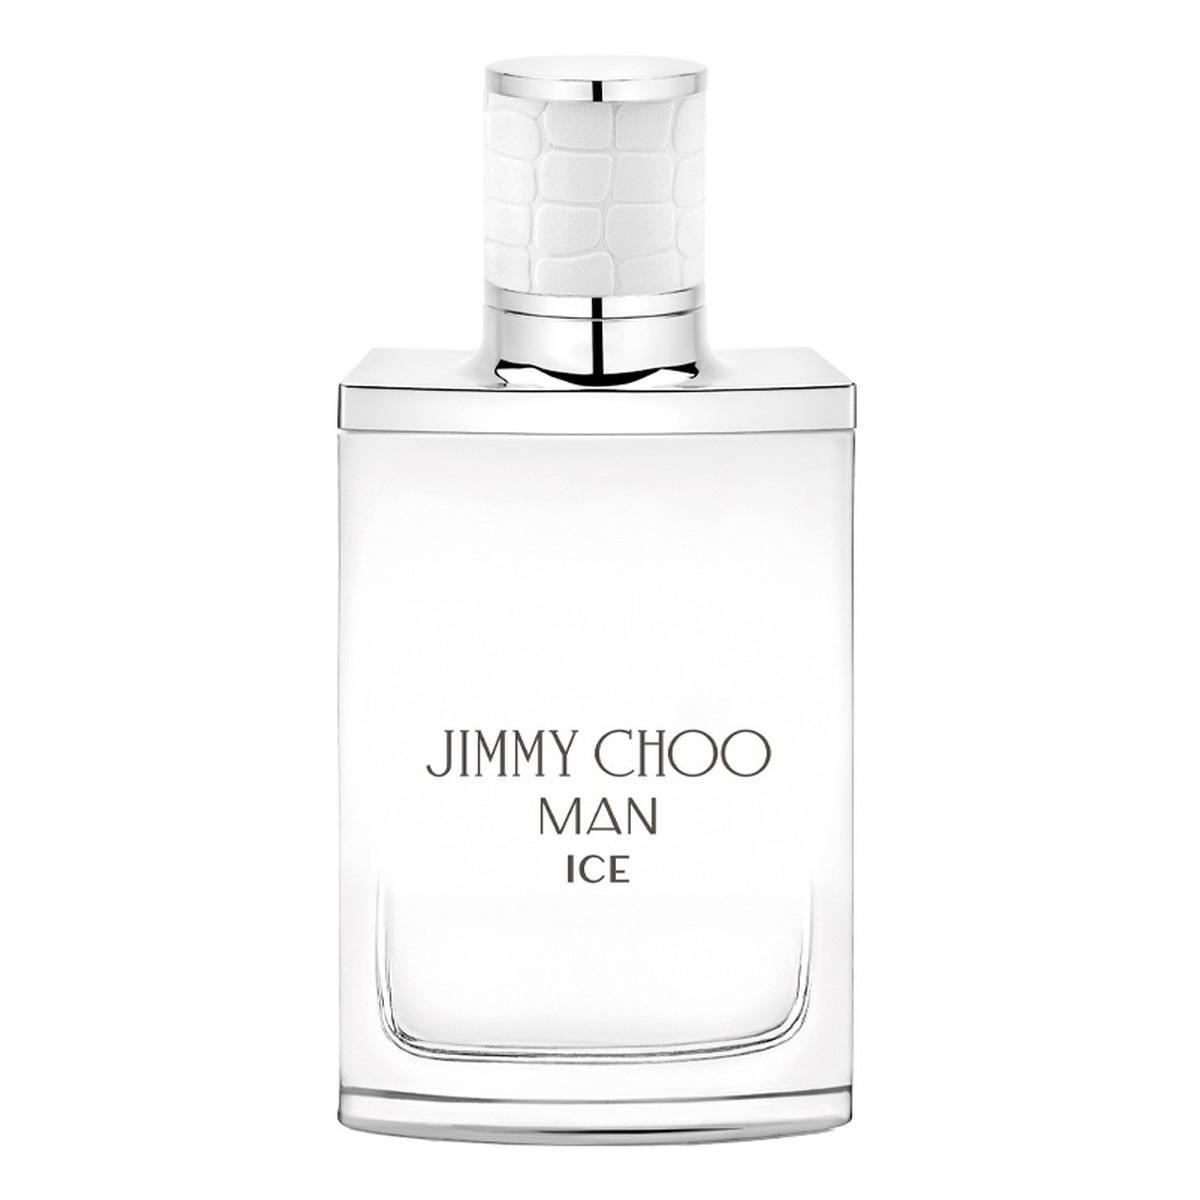 Jimmy Choo Man Ice Woda toaletowa spray 30ml